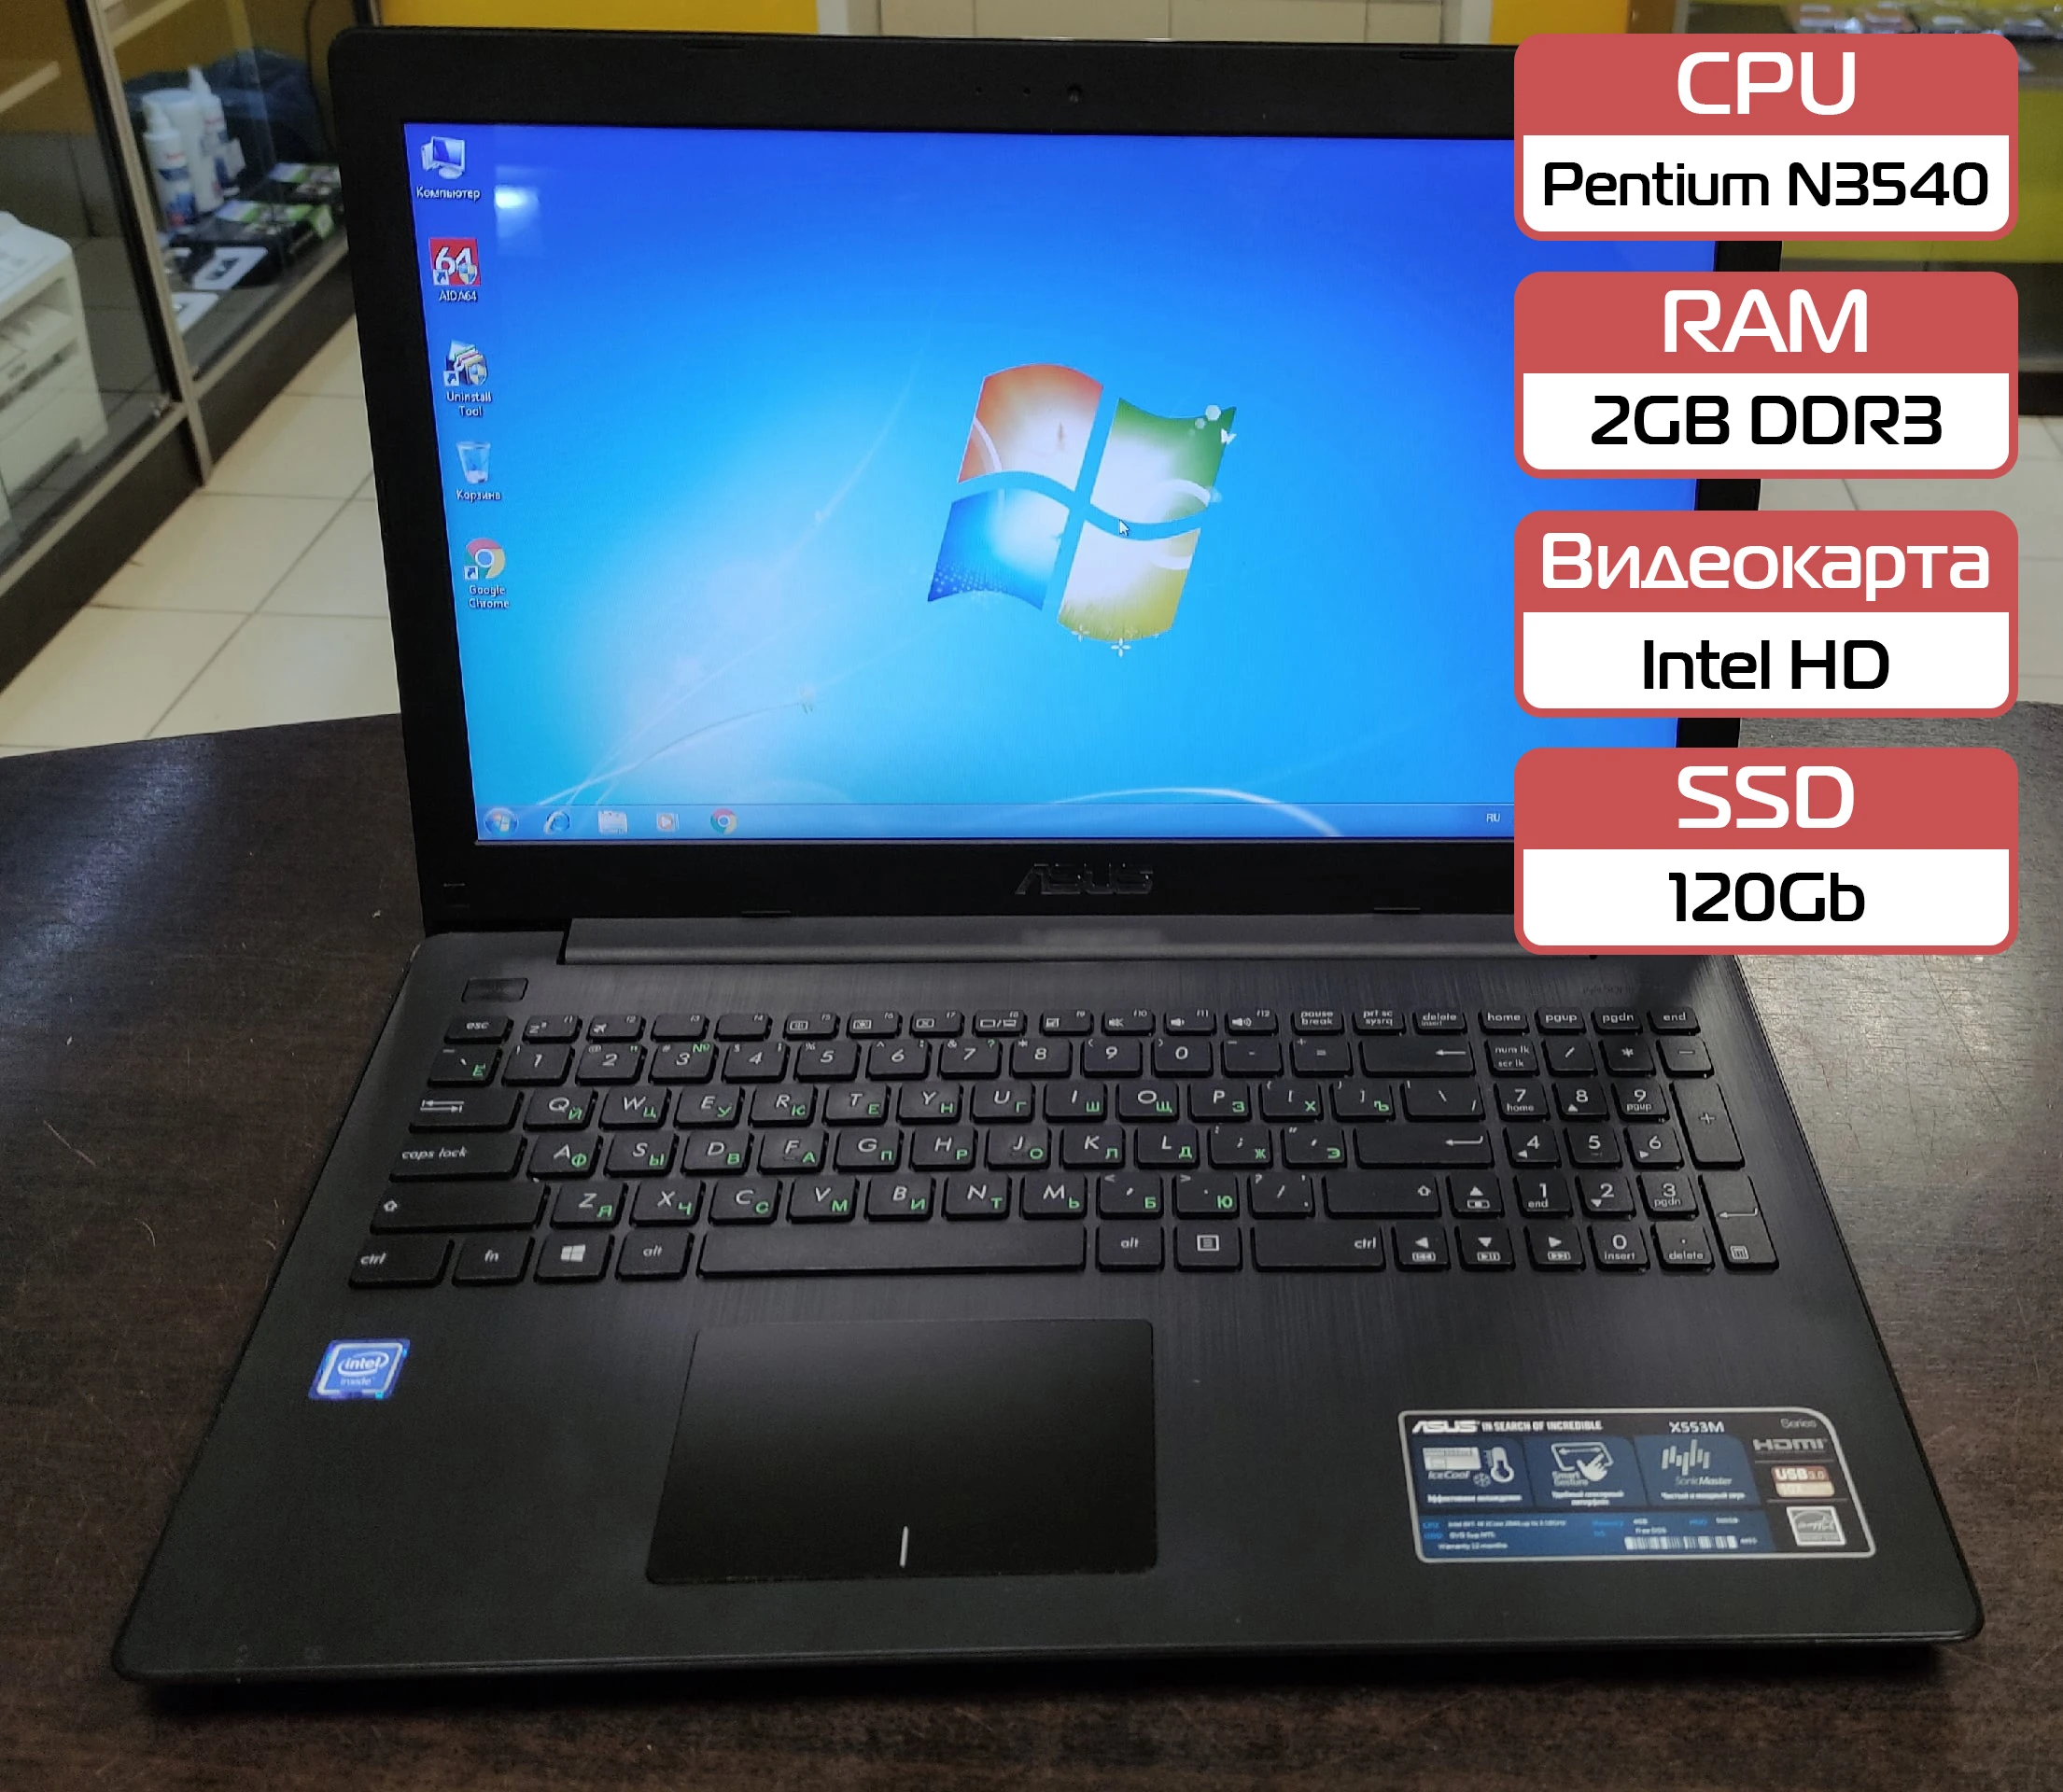 Laptop for study Asus x553ma b/y (Intel Pentium N3540/2GB DDR3/Intel HD  Graphics/120 GB/Win10) - AliExpress